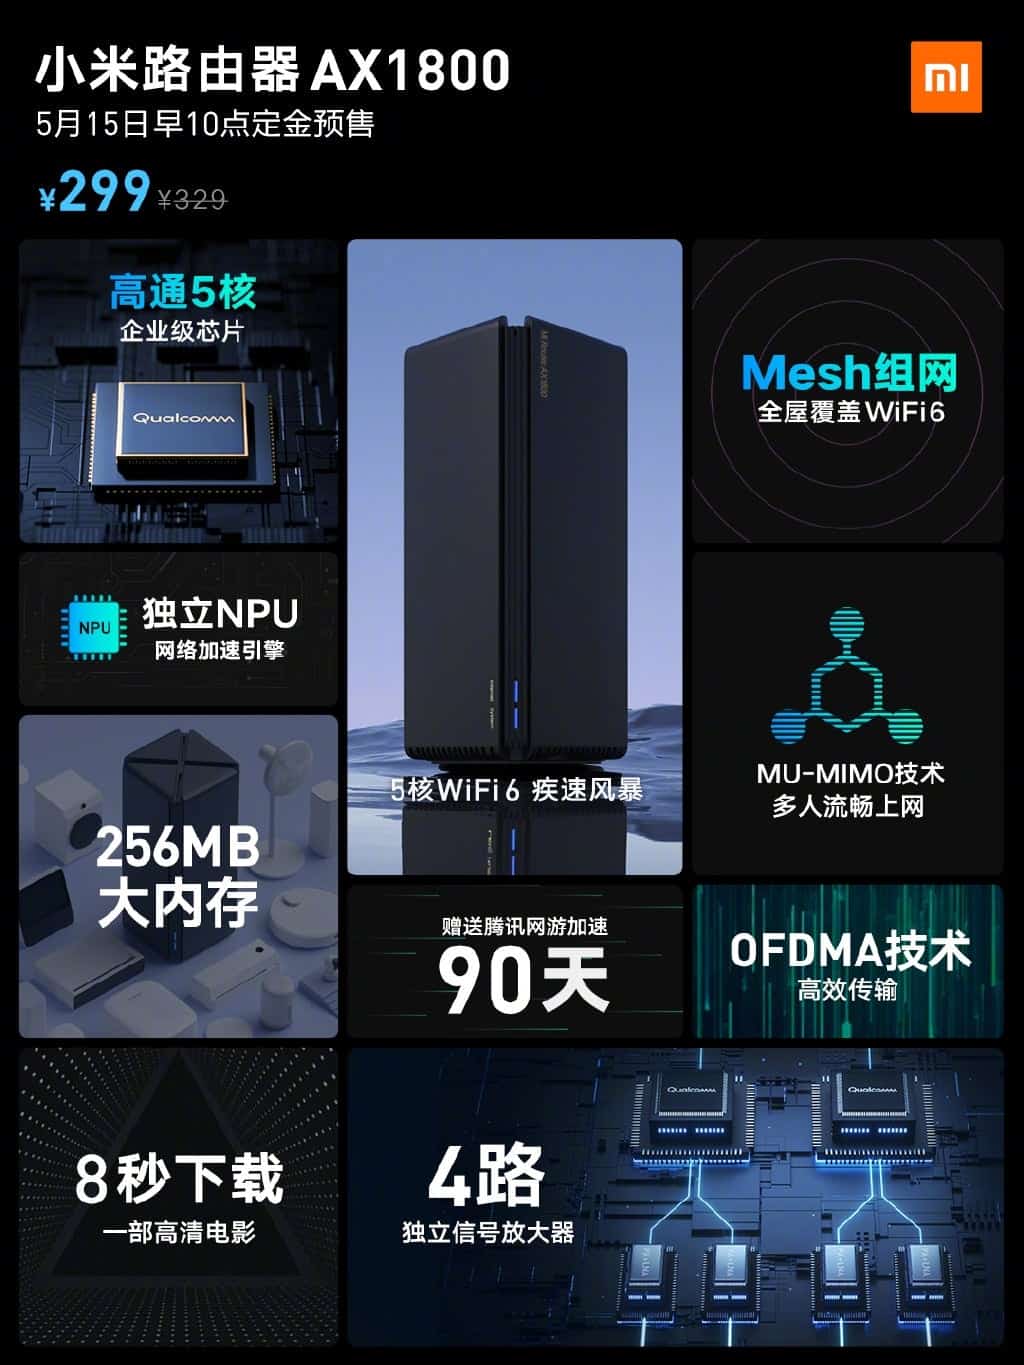 Xiaomi ra mắt router
Wi-Fi 6 AX1800, hỗ trợ mesh, giá chỉ 1.1 triệu đồng